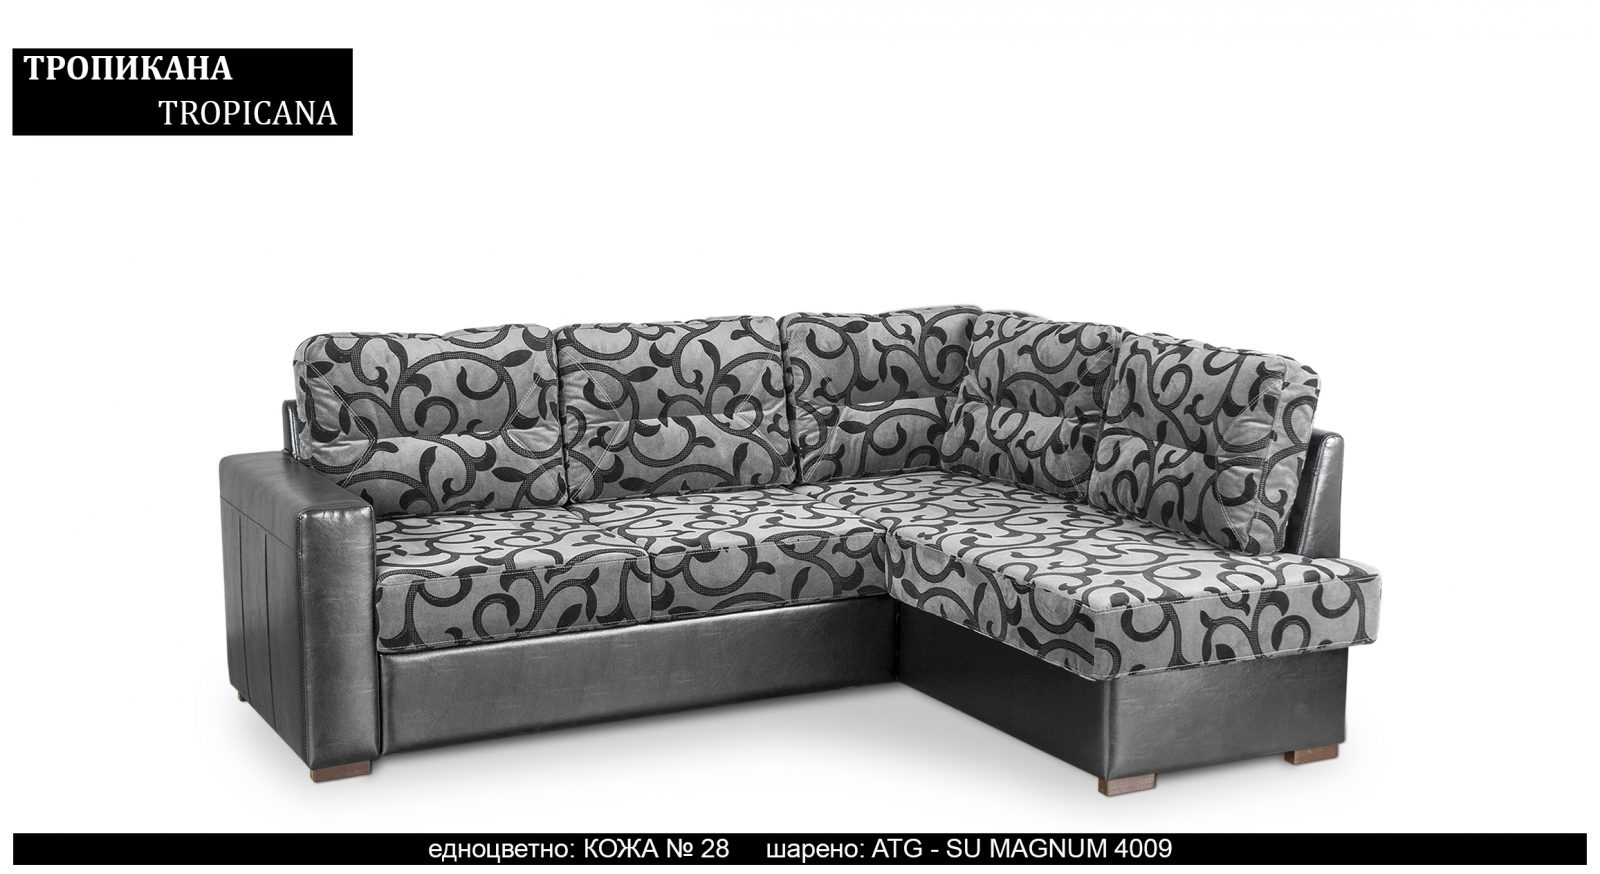 (Български) Разтегателен трапезен ъглов диван |»ТРОПИКАНА»| Руди-Ан